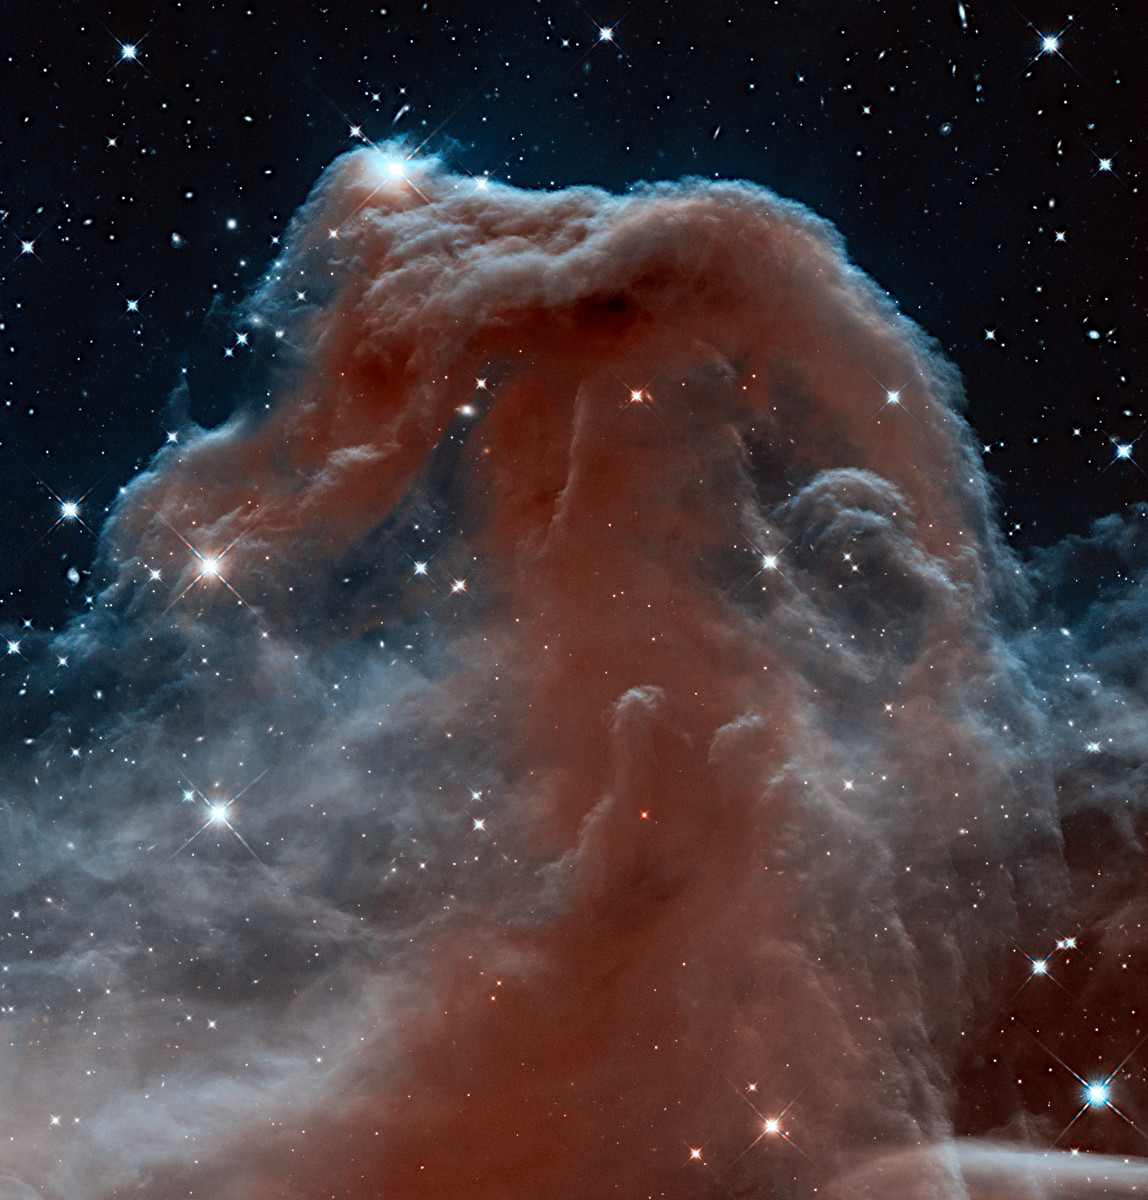 ハッブルが赤外線でとらえた馬頭星雲 30 Years 30 Images 23 13年 アストロピクス